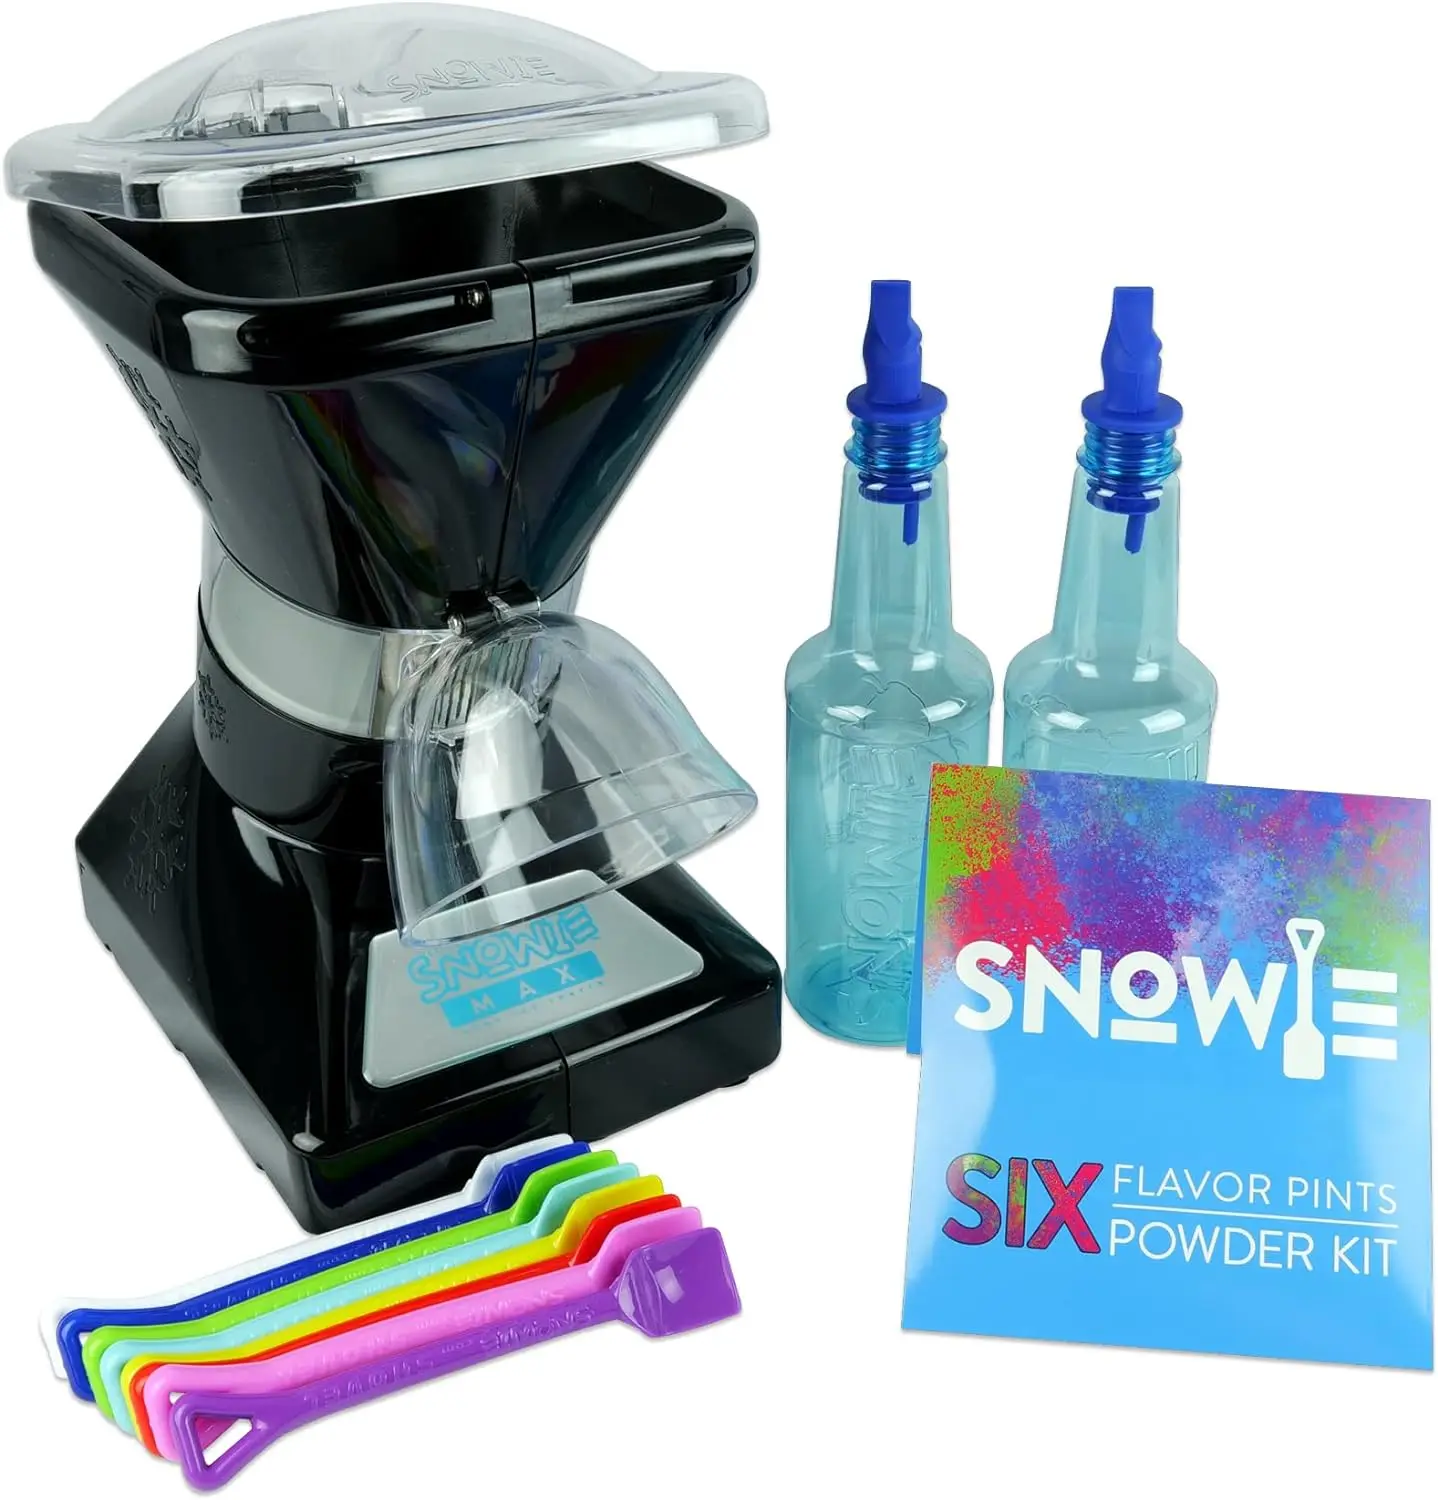 

SNOWIE-маленькая Снежная конусная машина Snowie-льдогенератор высшего качества для бритья, с смесь искусственного сиропа, набор из 6 палочек, черный